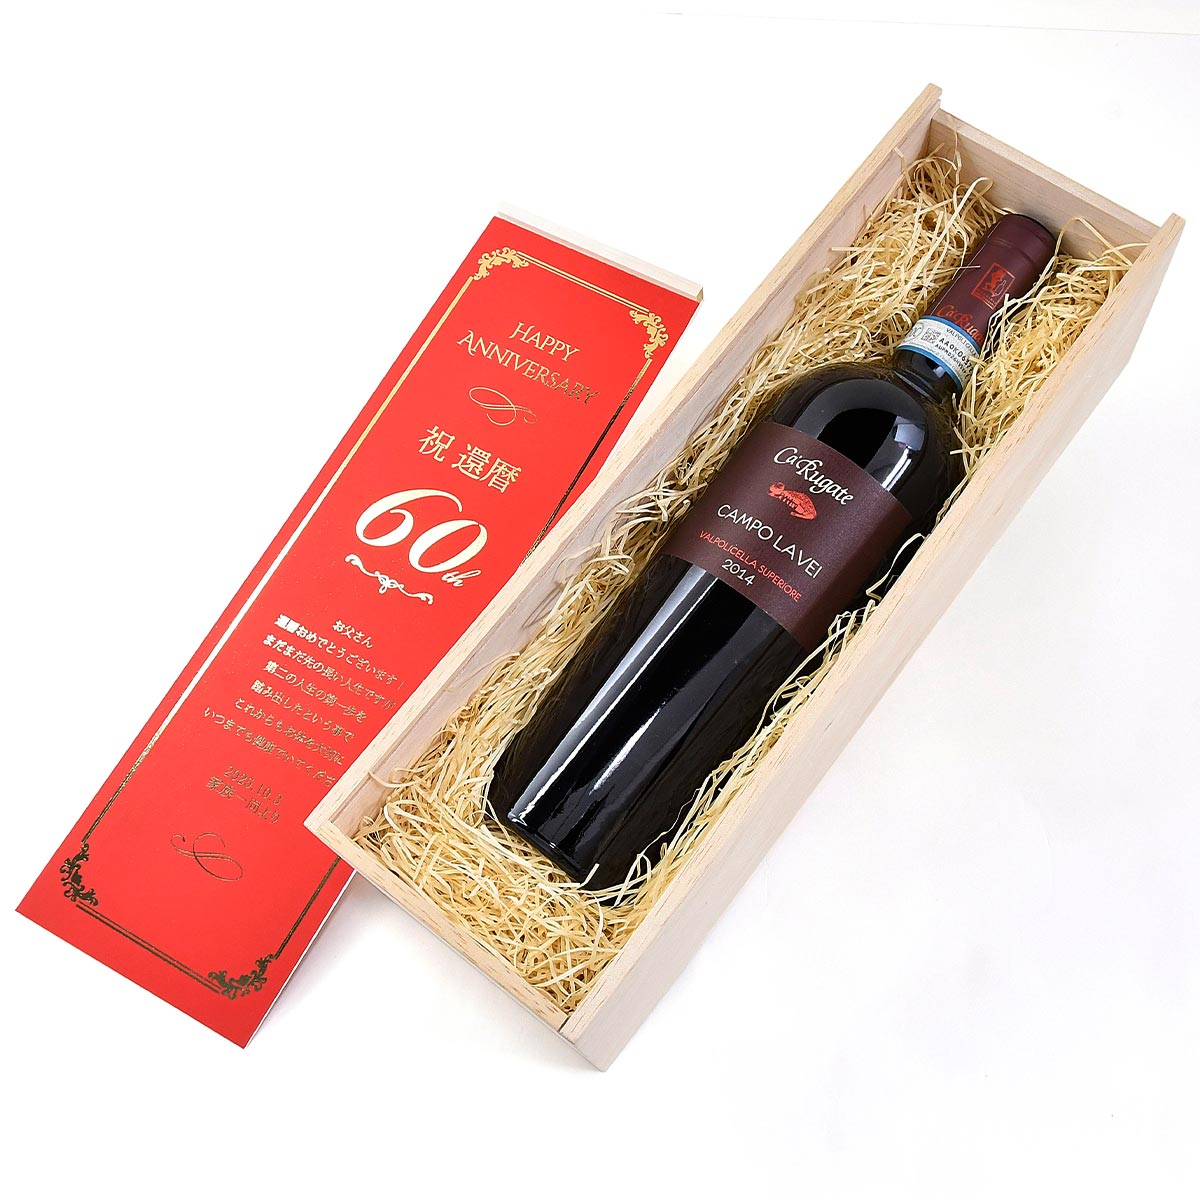 特別感あふれるメッセージカード付きの木箱にこだわりの赤ワインをセットしてお届け。還暦のお祝いにふさわしいおしゃれなワインのギフトセットです。